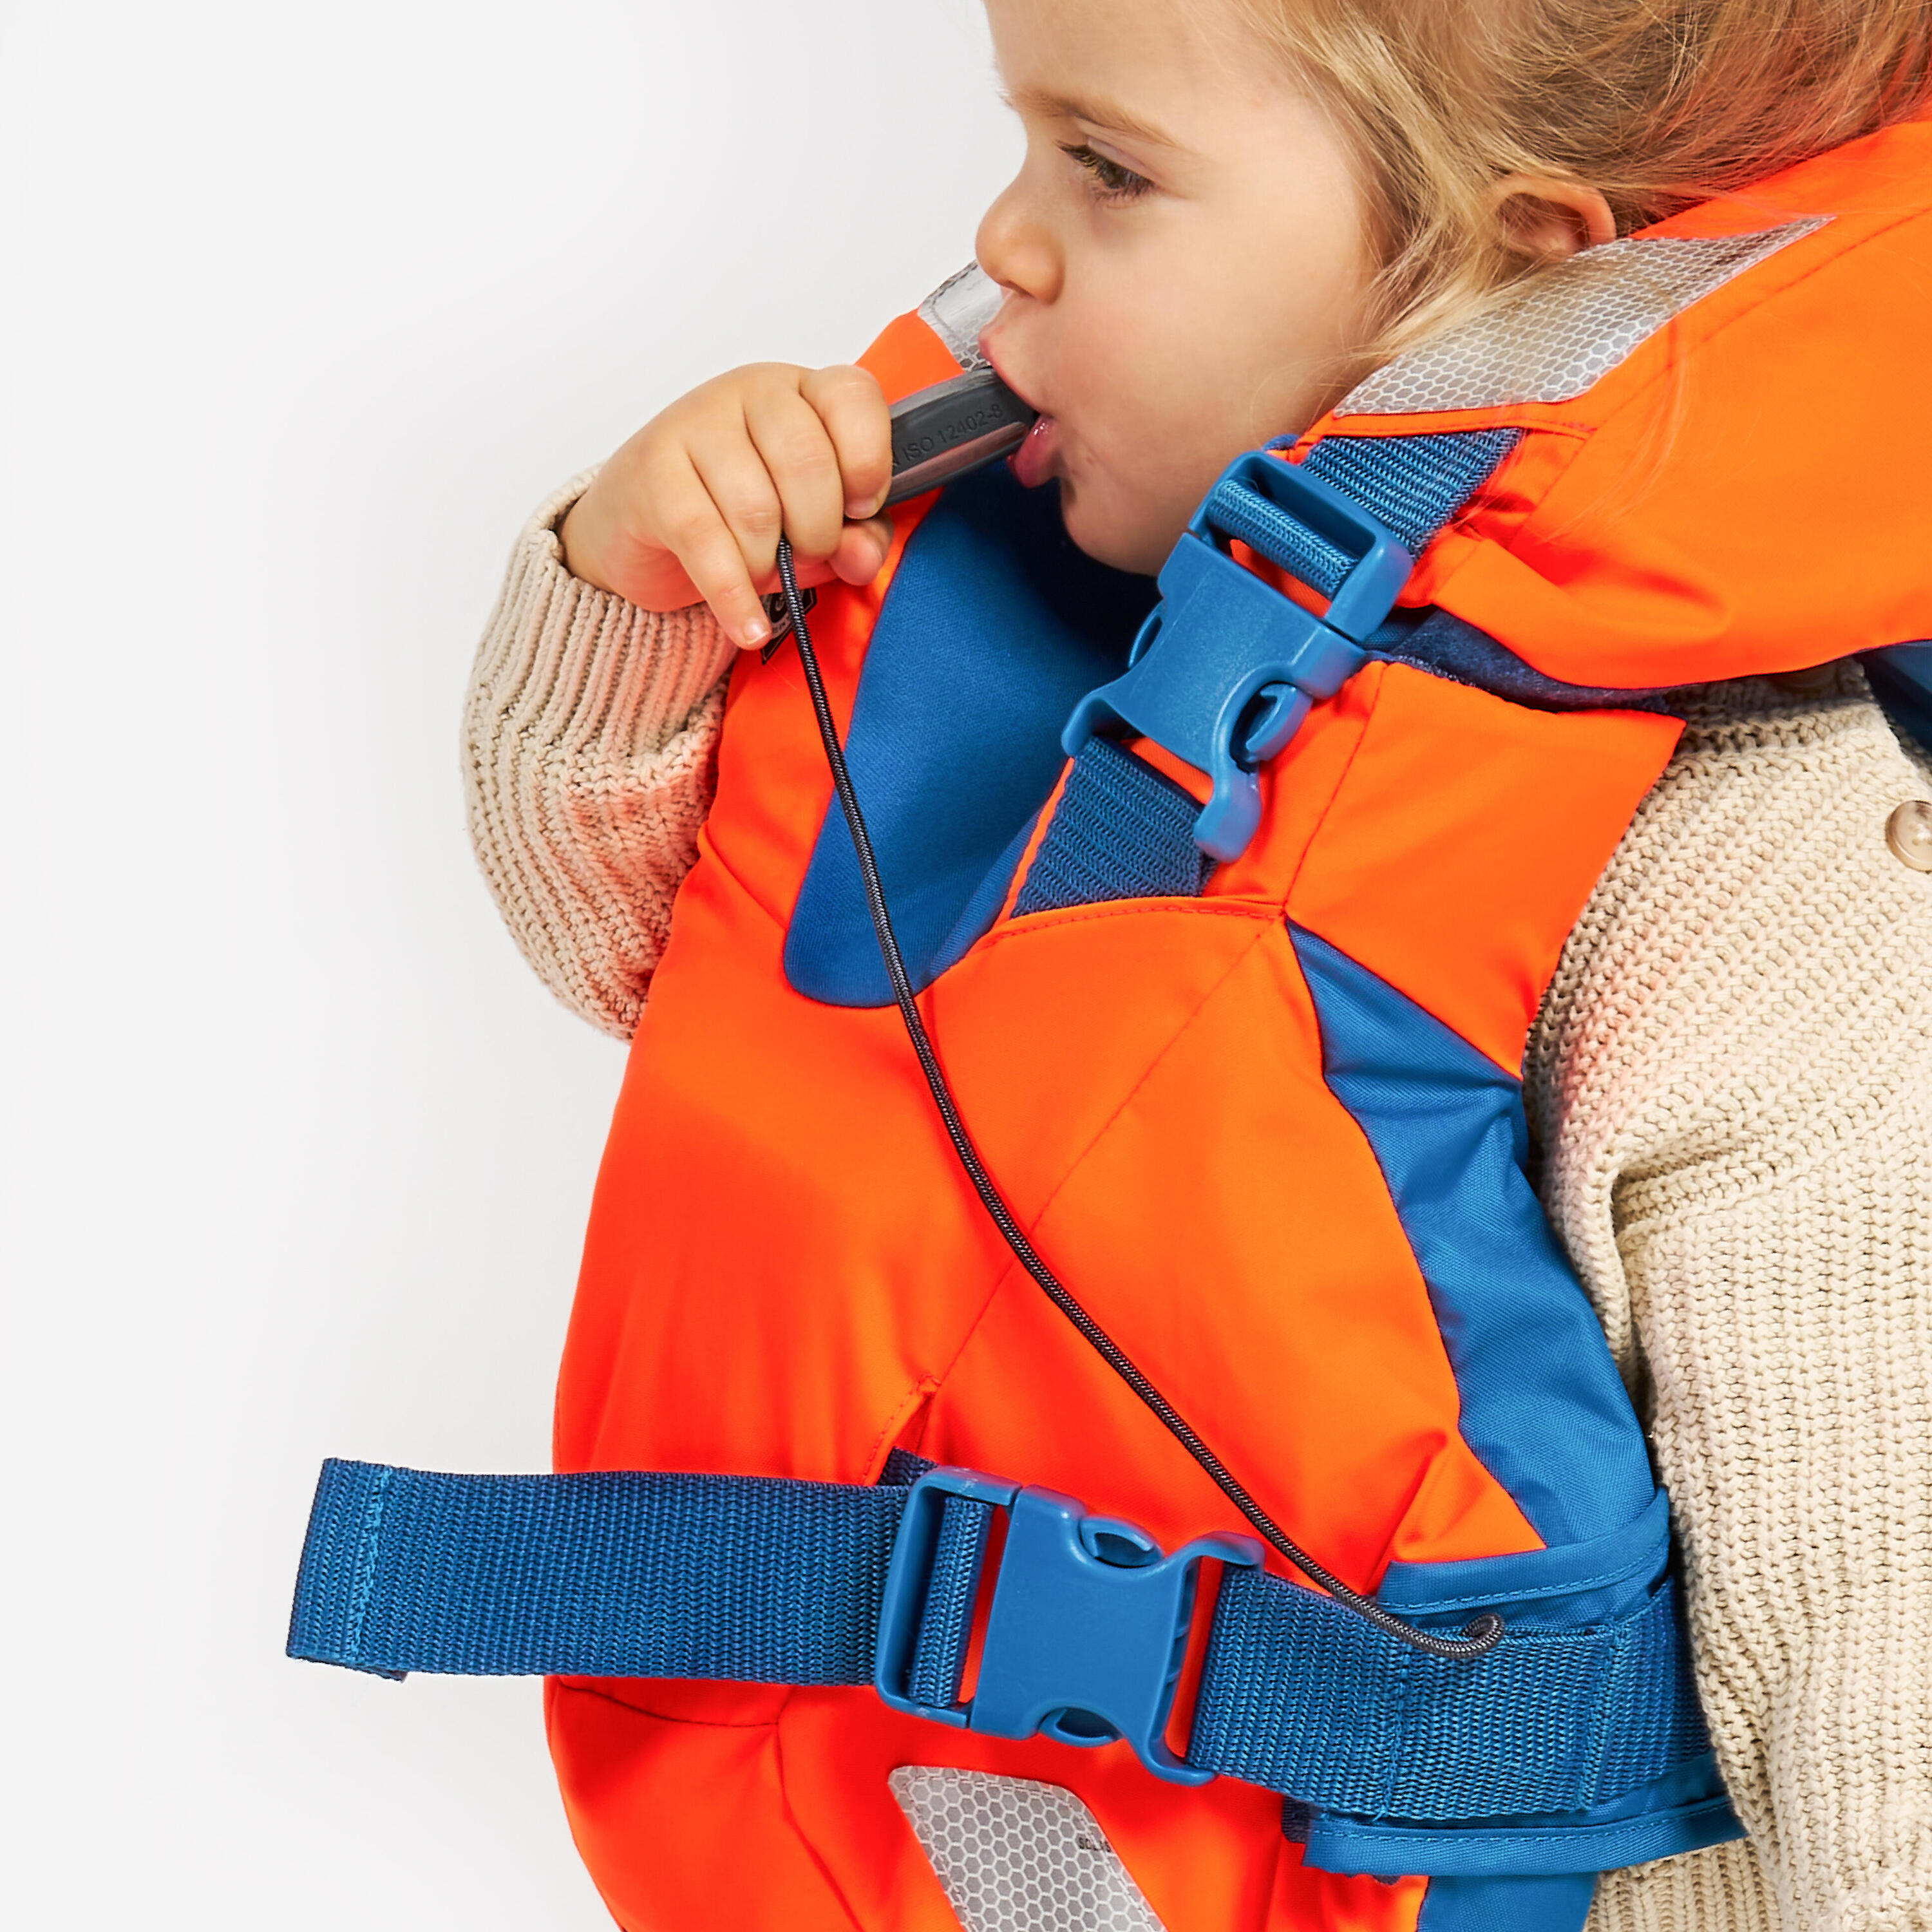 LJ100N easy baby life jacket for babies and infants 10-15 kg orange blue 8/15